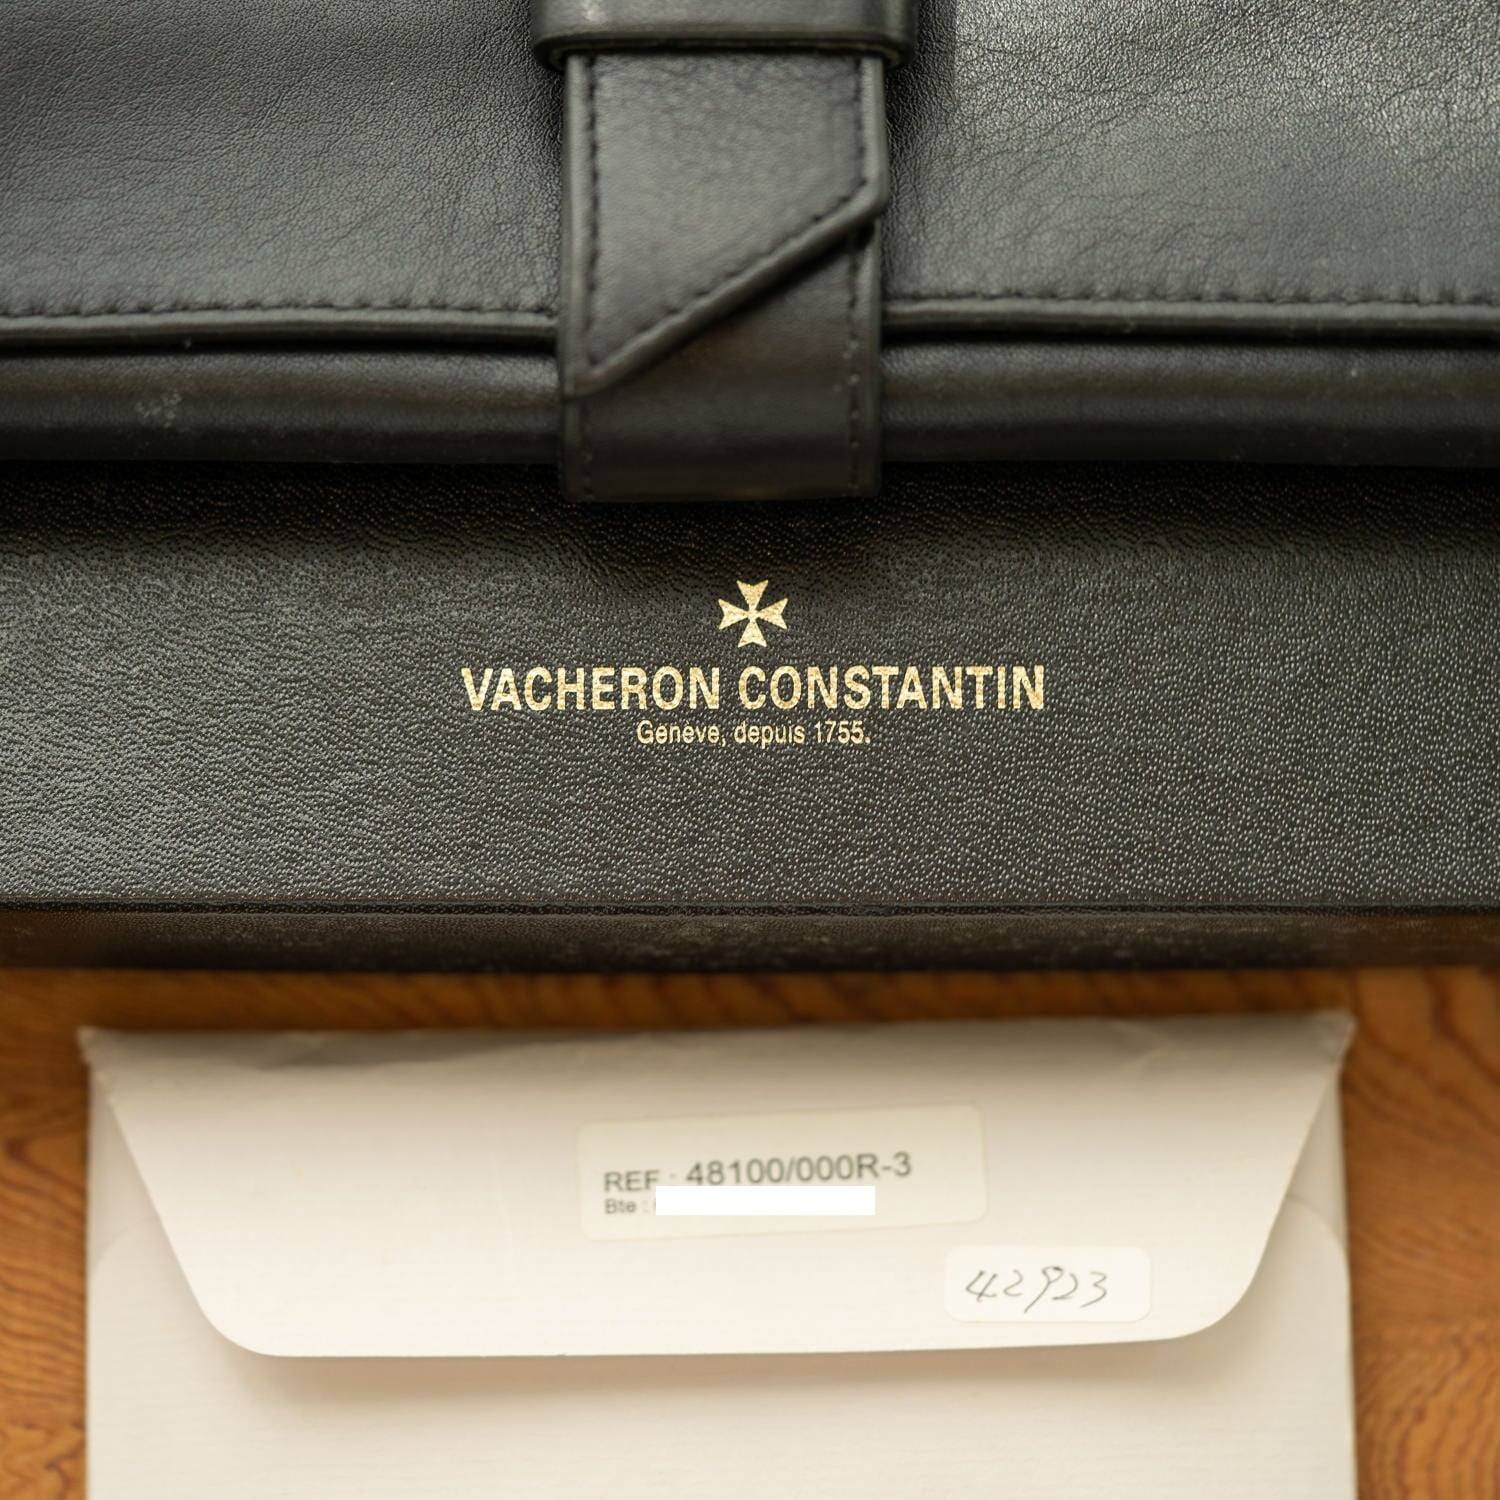 VACHERON CONSTANTIN Historiques 48100 "Tour de L'ile" RG Box and Paper - Arbitro